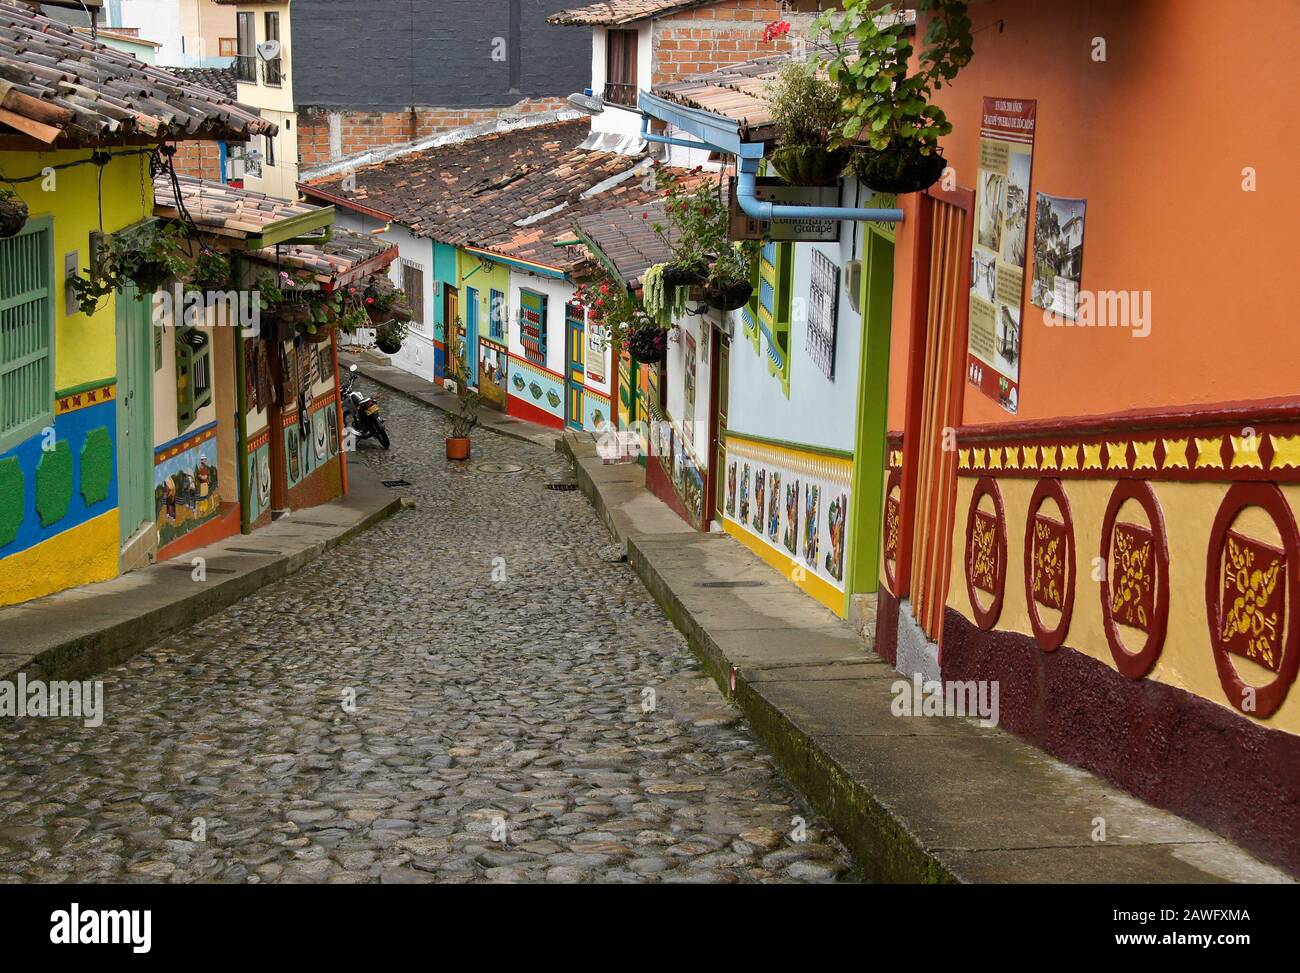 Colorati edifici con tetto piastrellato decorati con zocalos (fregi) linea Calle del Recuerdos, una strada pedonale acciottolata a Guatape, Colombia Foto Stock